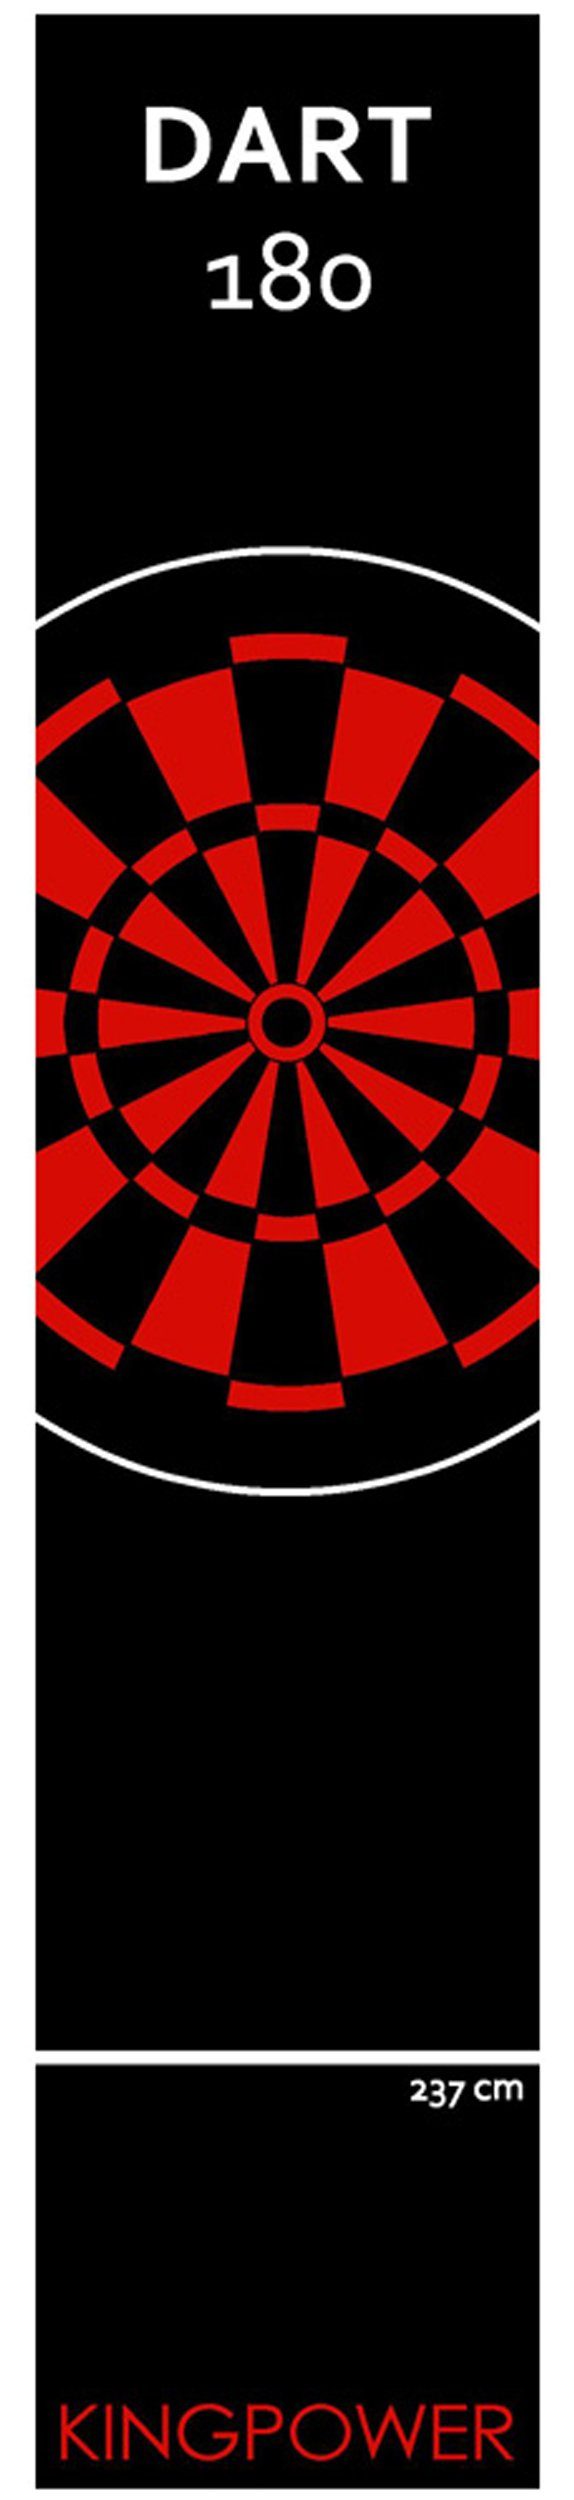 Kingpower Dartmatte Dart Matte Dartteppich Turnier Matte Dartmatte Darts 2 Größen Kingpower Design 22 Rot